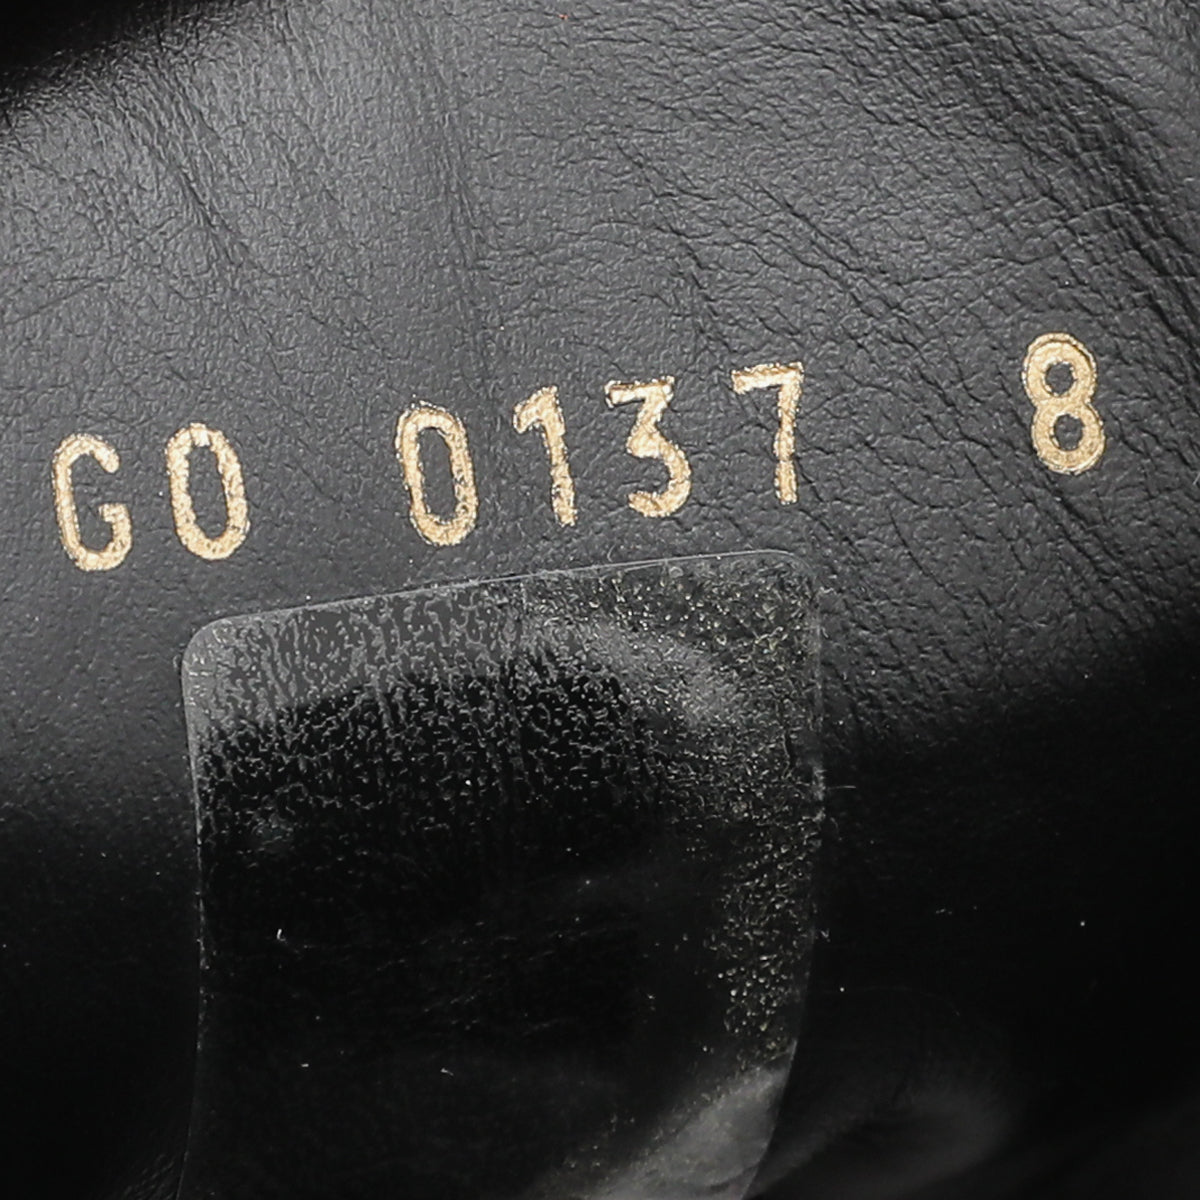 Louis Vuitton Men's Black Damier Fastlane Sneaker size 6.5 US / 5.5 LV